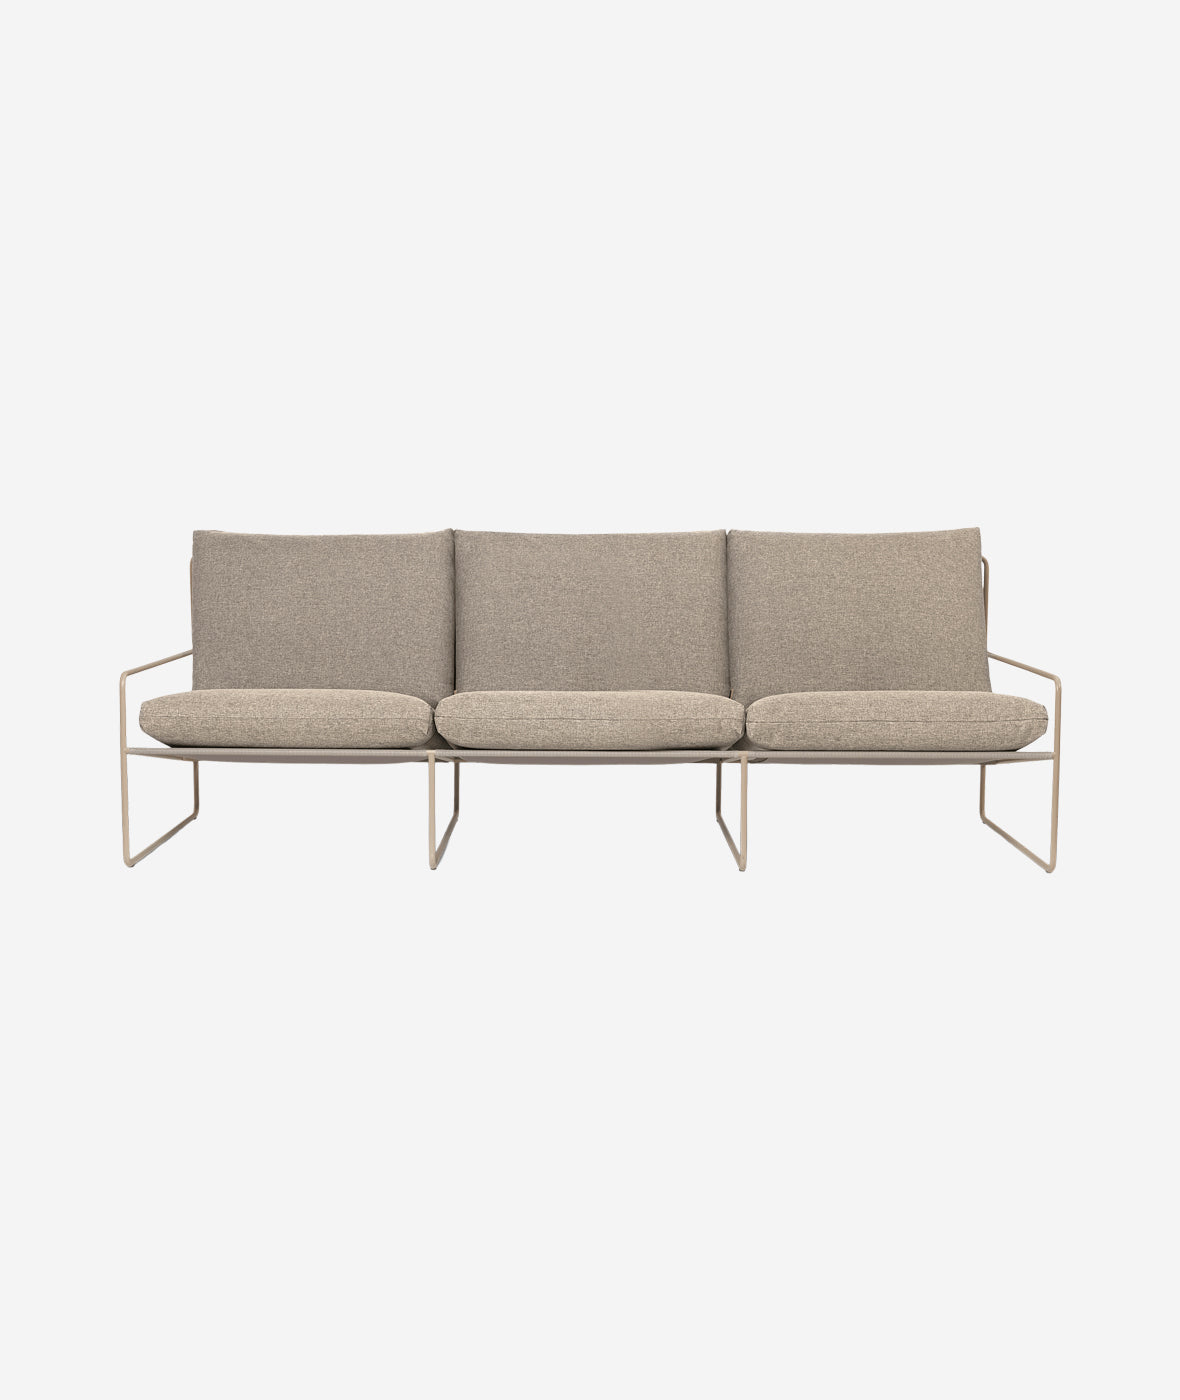 Desert Sofa - More Options